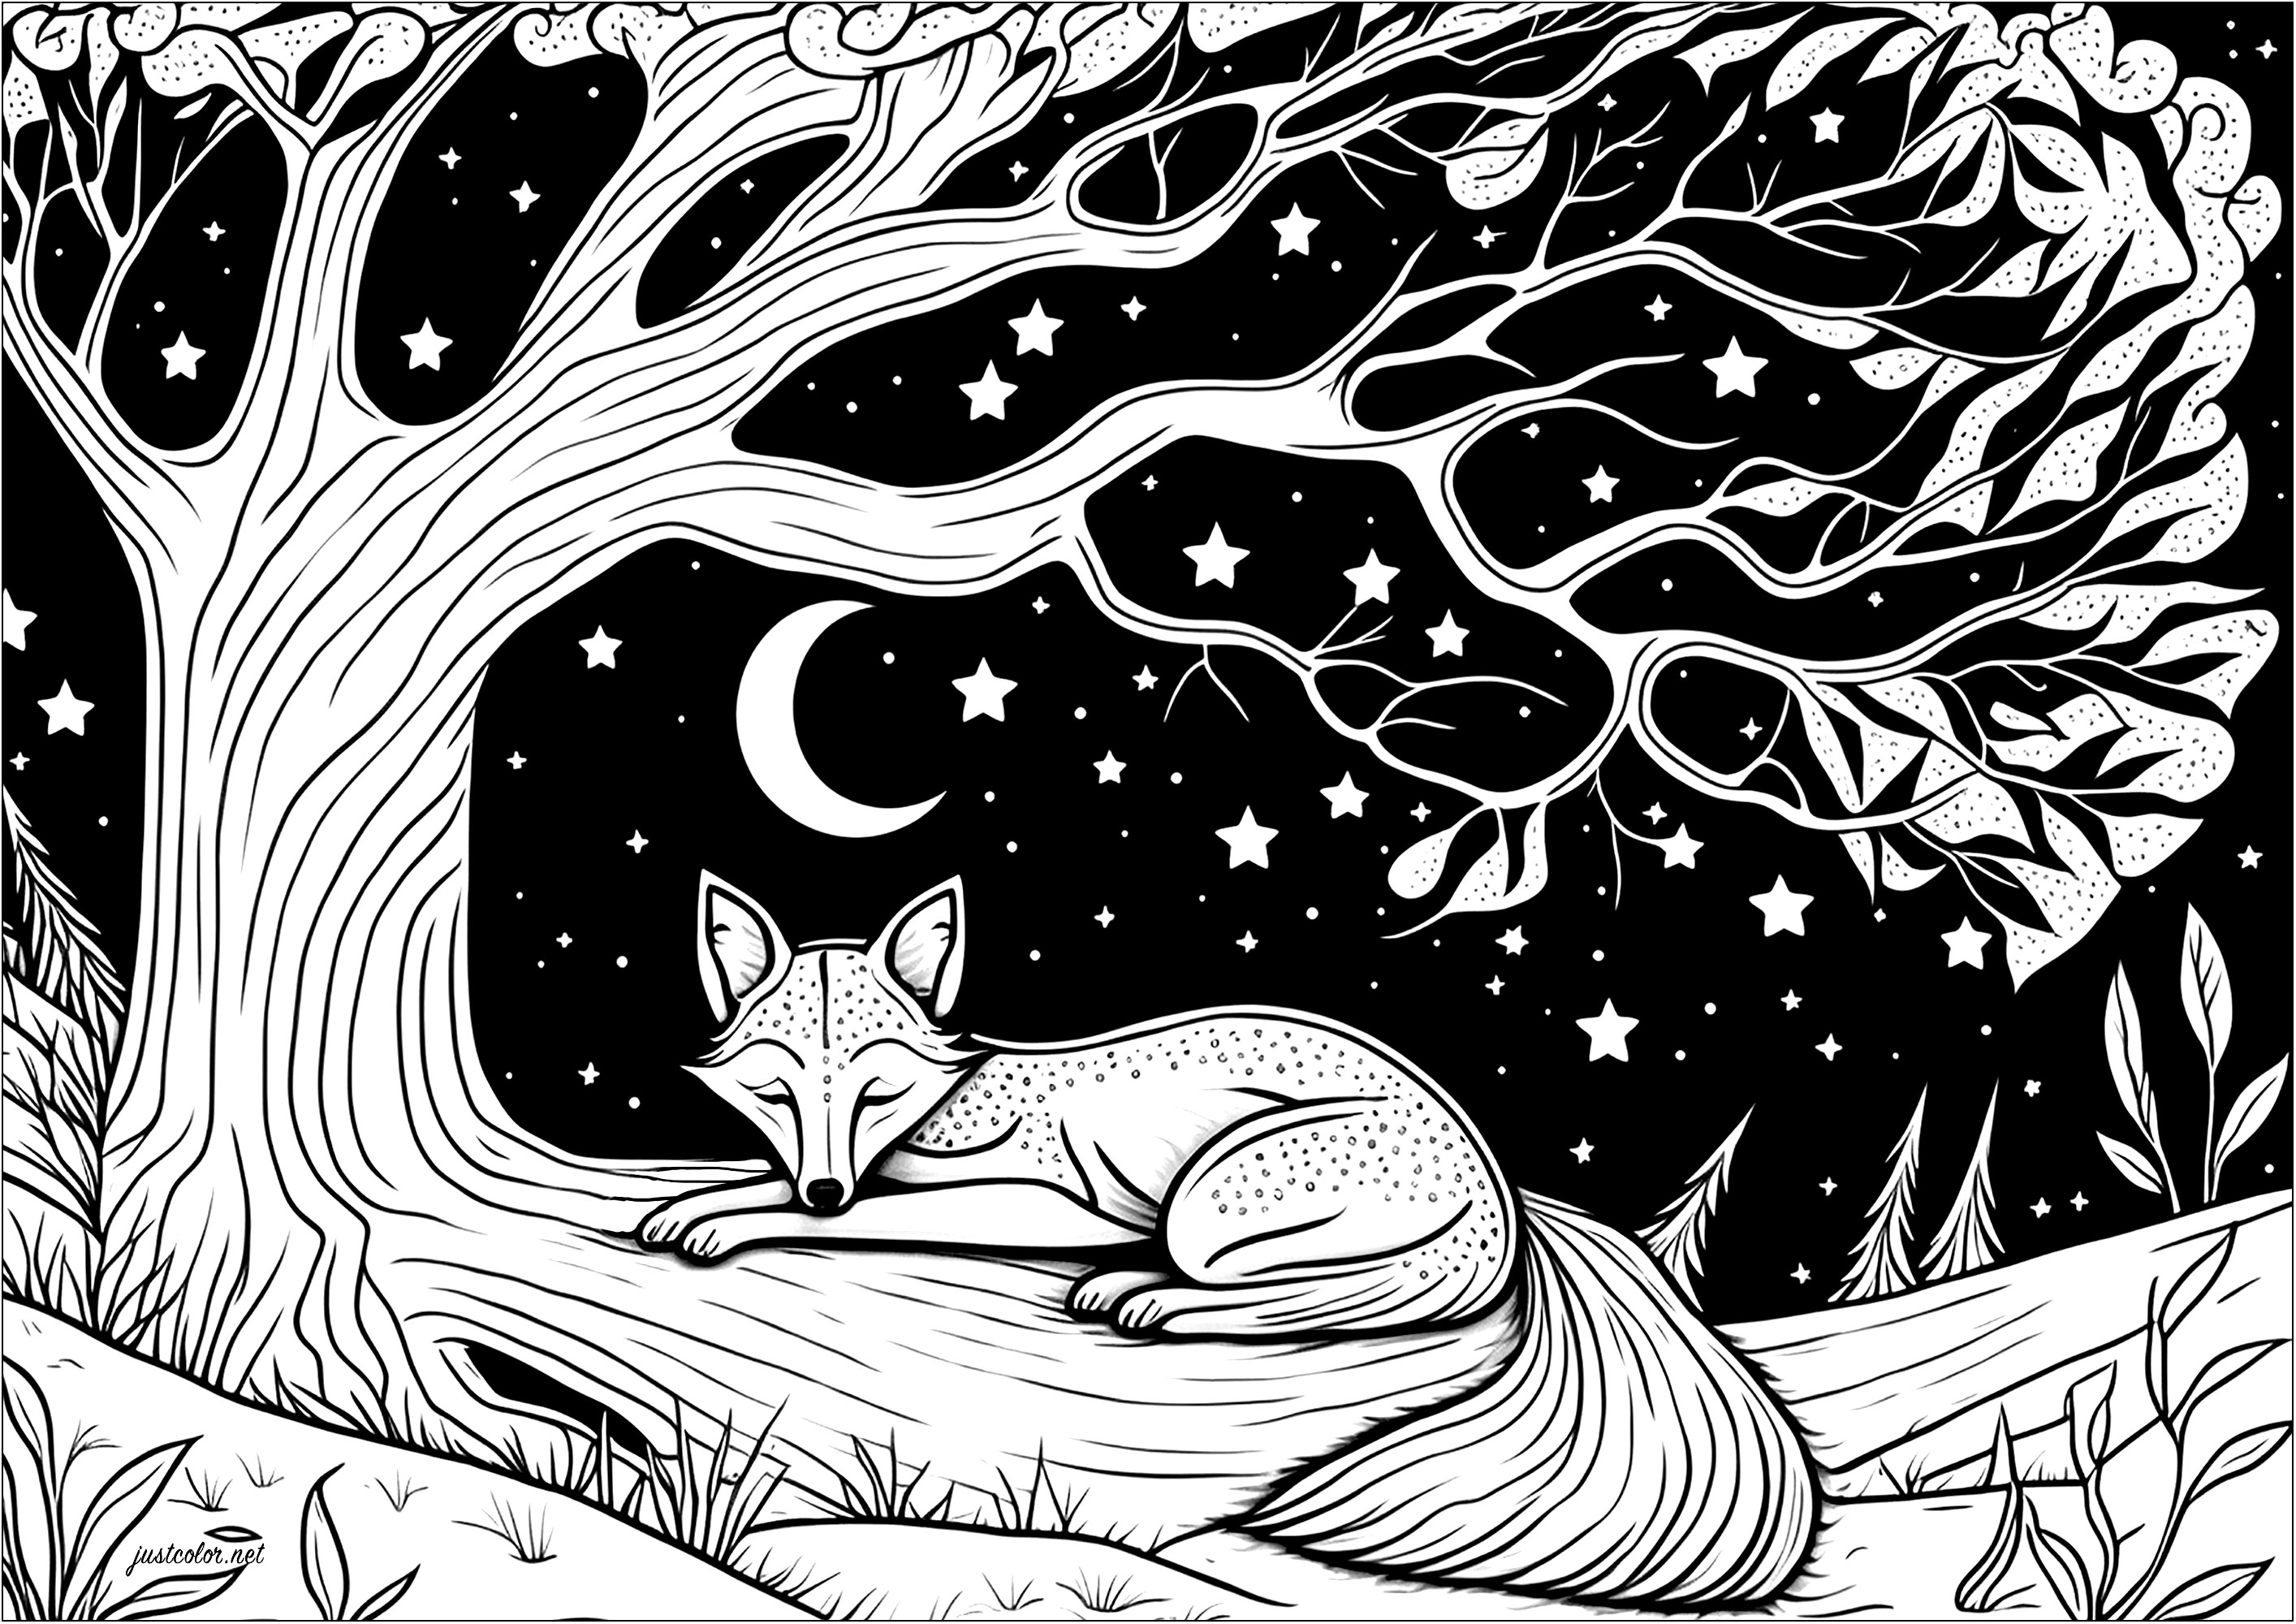 Coloreado de un zorro dormido tumbado en la rama de un árbol. Aquí tienes a un zorro durmiendo plácidamente bajo un magnífico árbol. Bajo este cielo estrellado, ¡parece soñar con grandes aventuras!